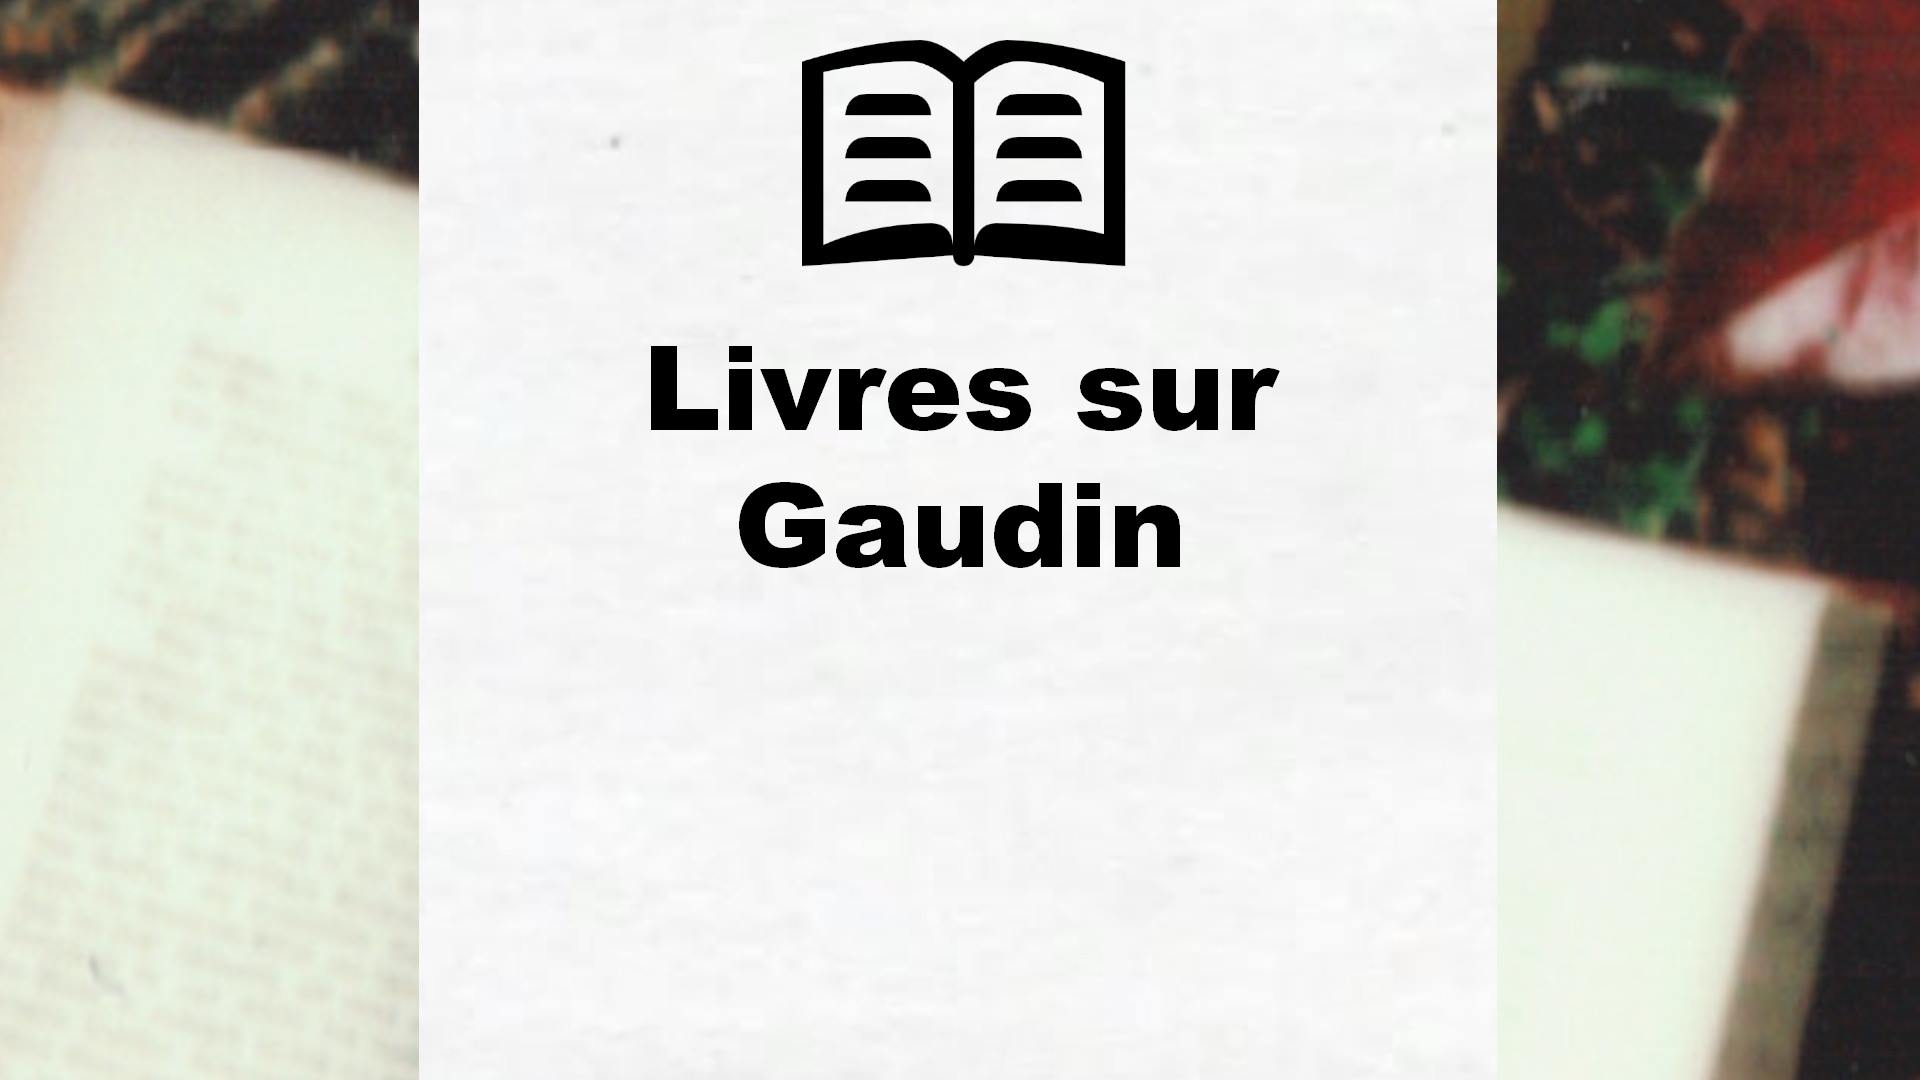 Livres sur Gaudin